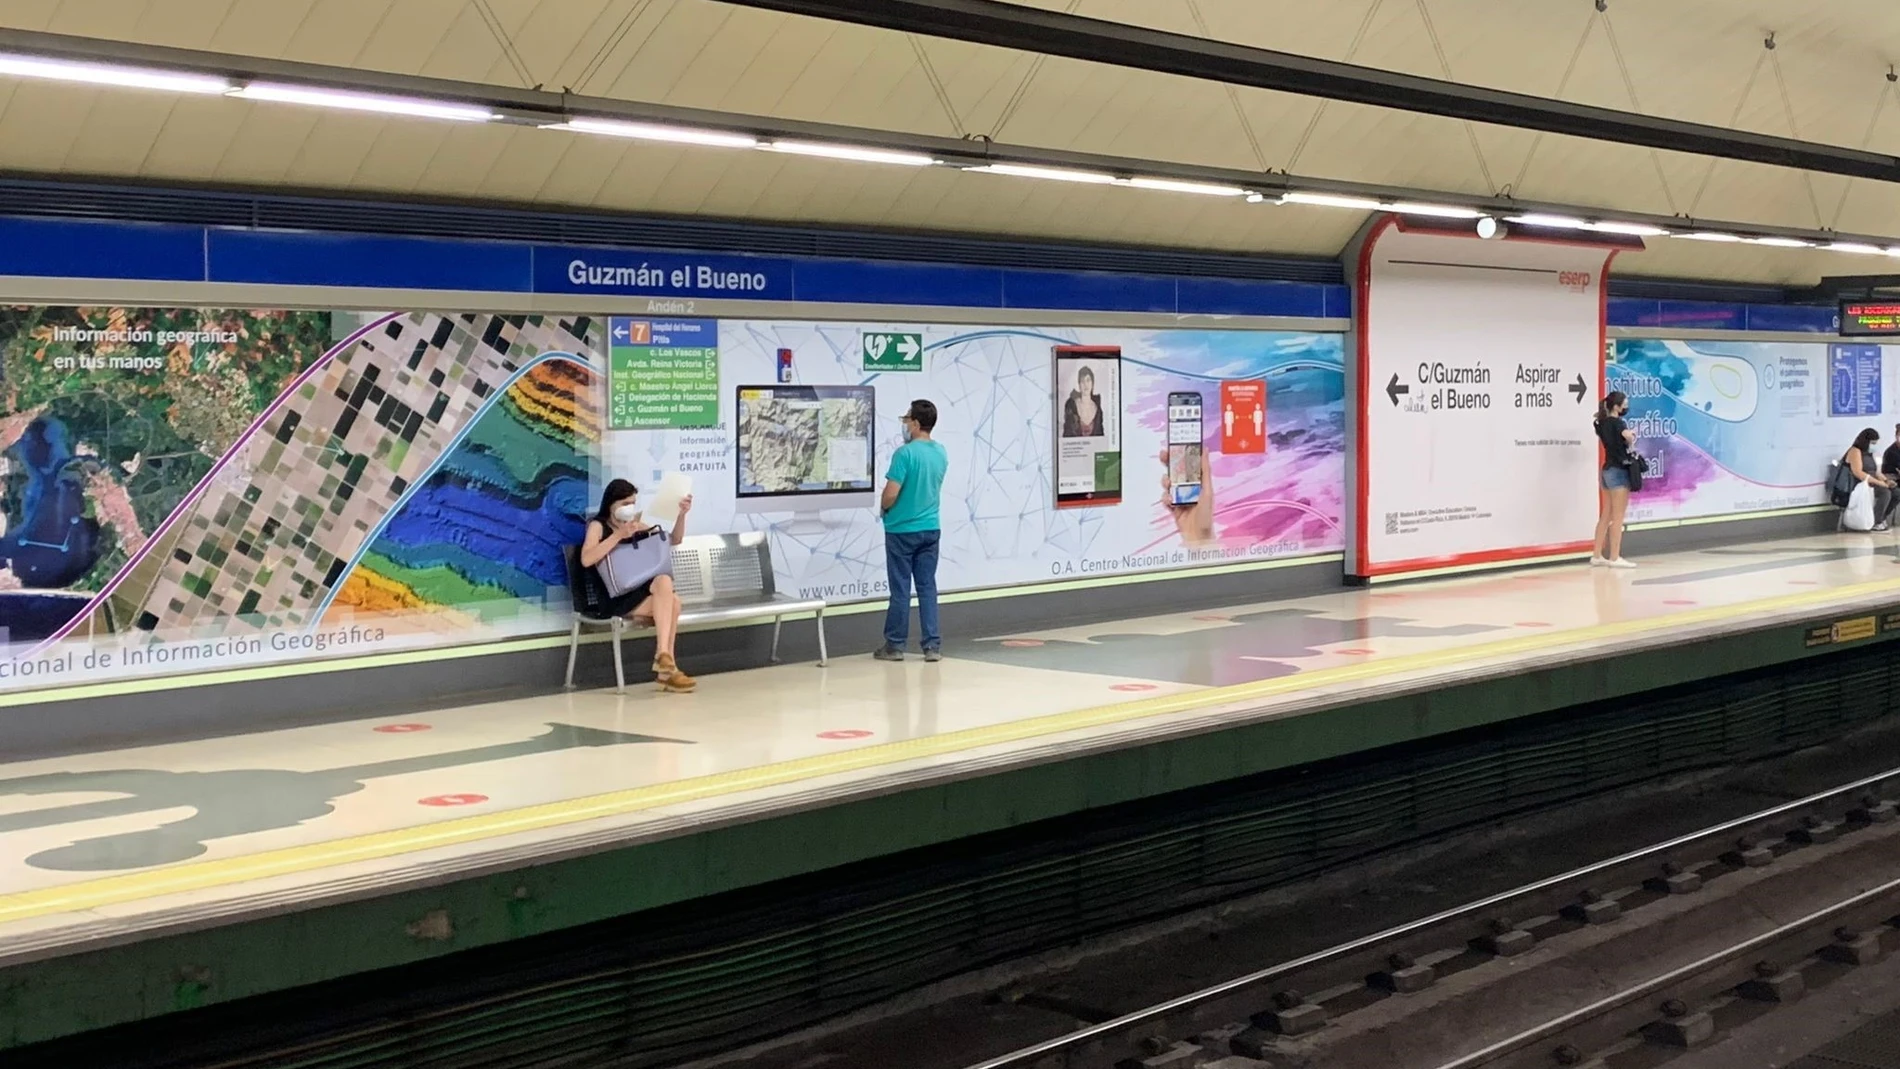 Metro de Madrid tematiza la estación de Guzmán el Bueno por el 150 aniversario del Instituto Geográfico Nacional